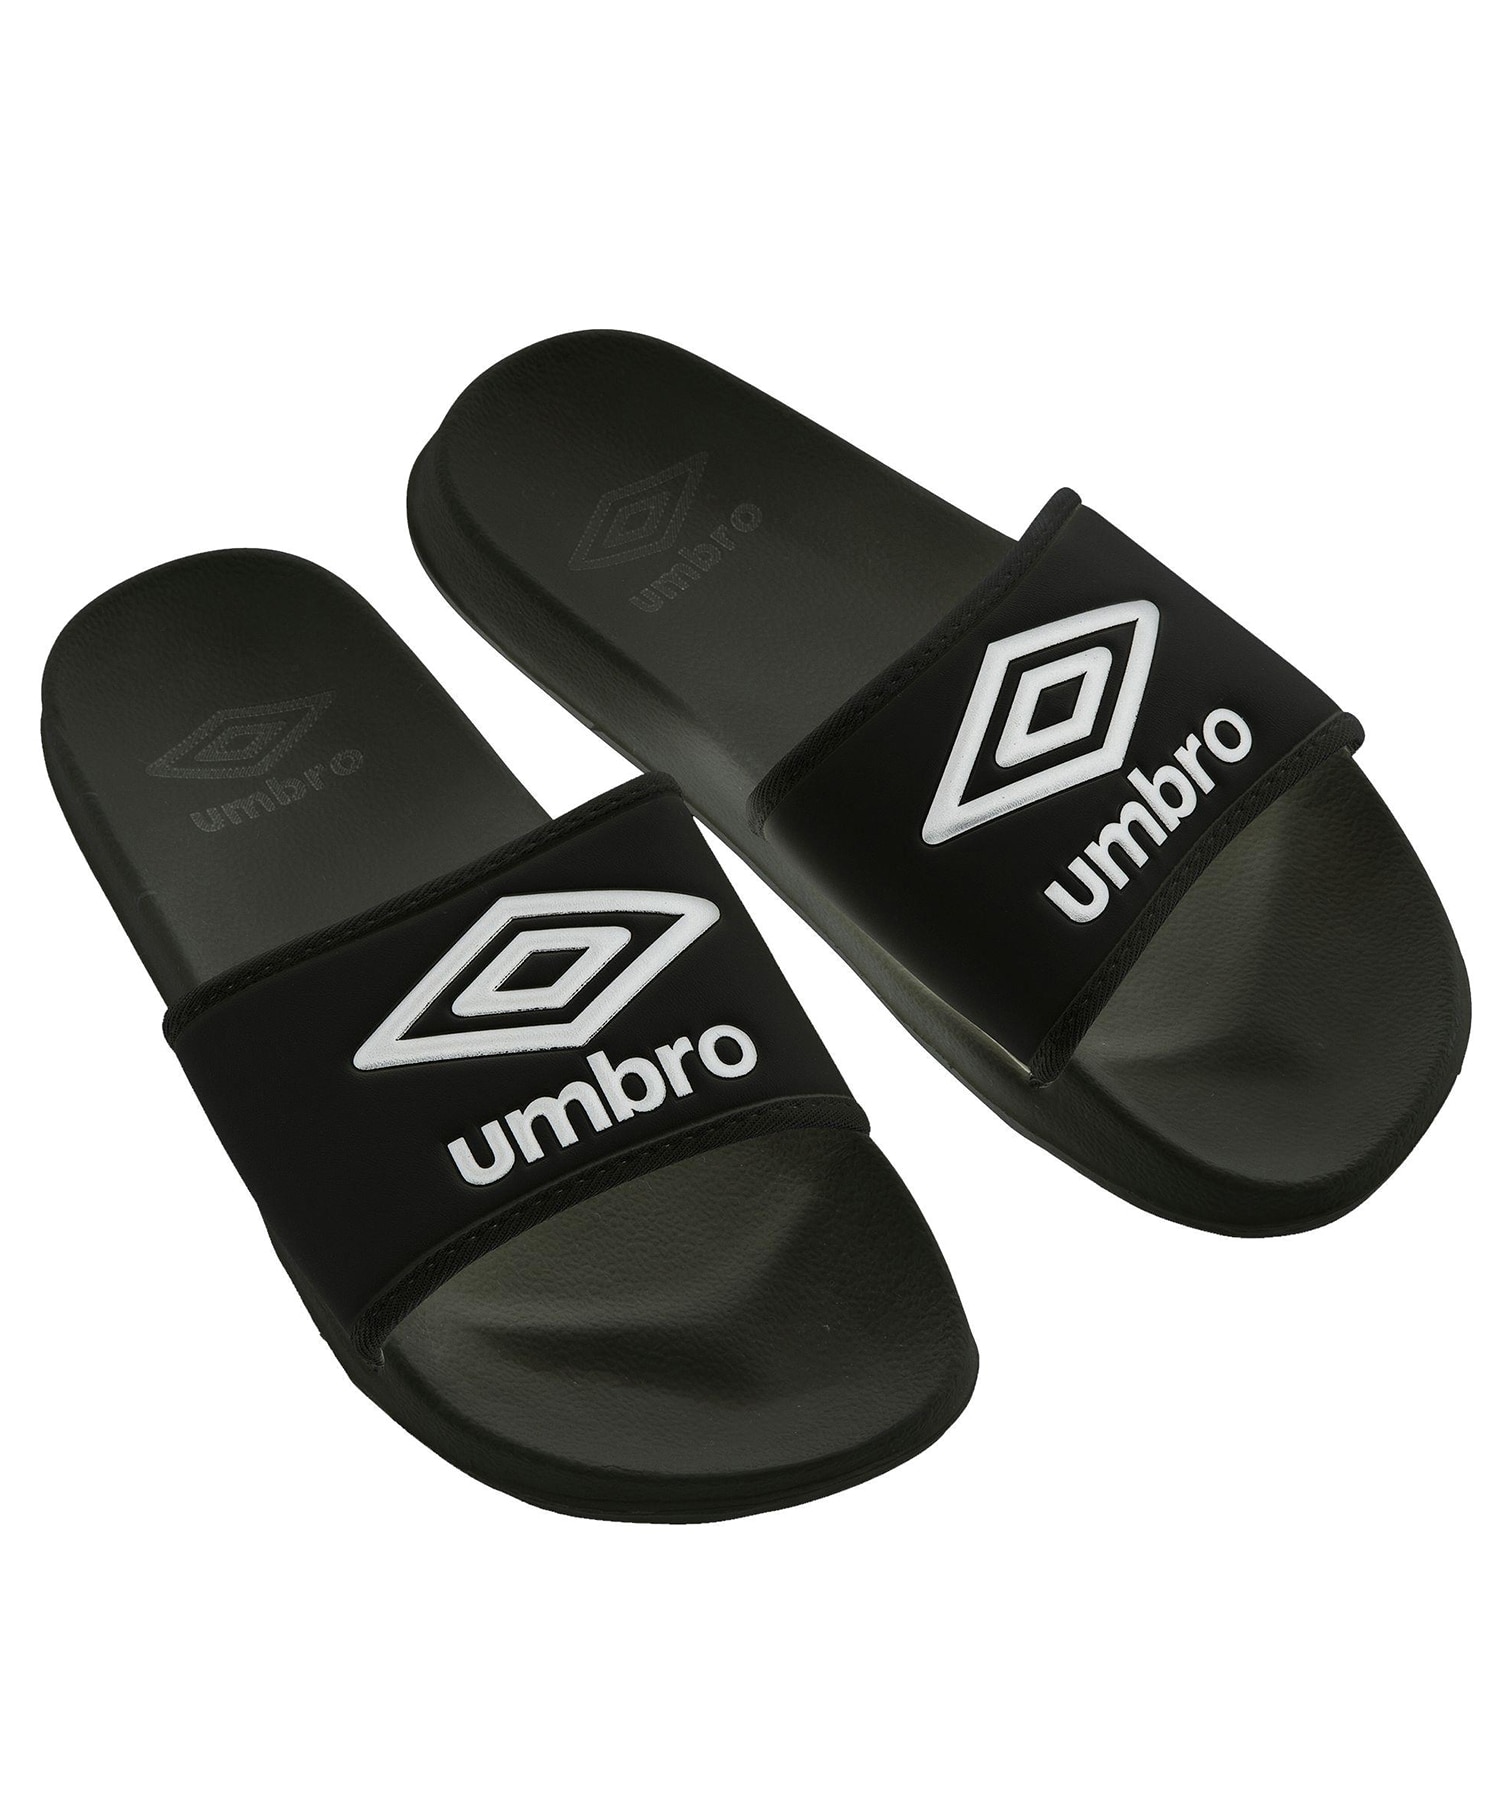 Umbro Core Slippers